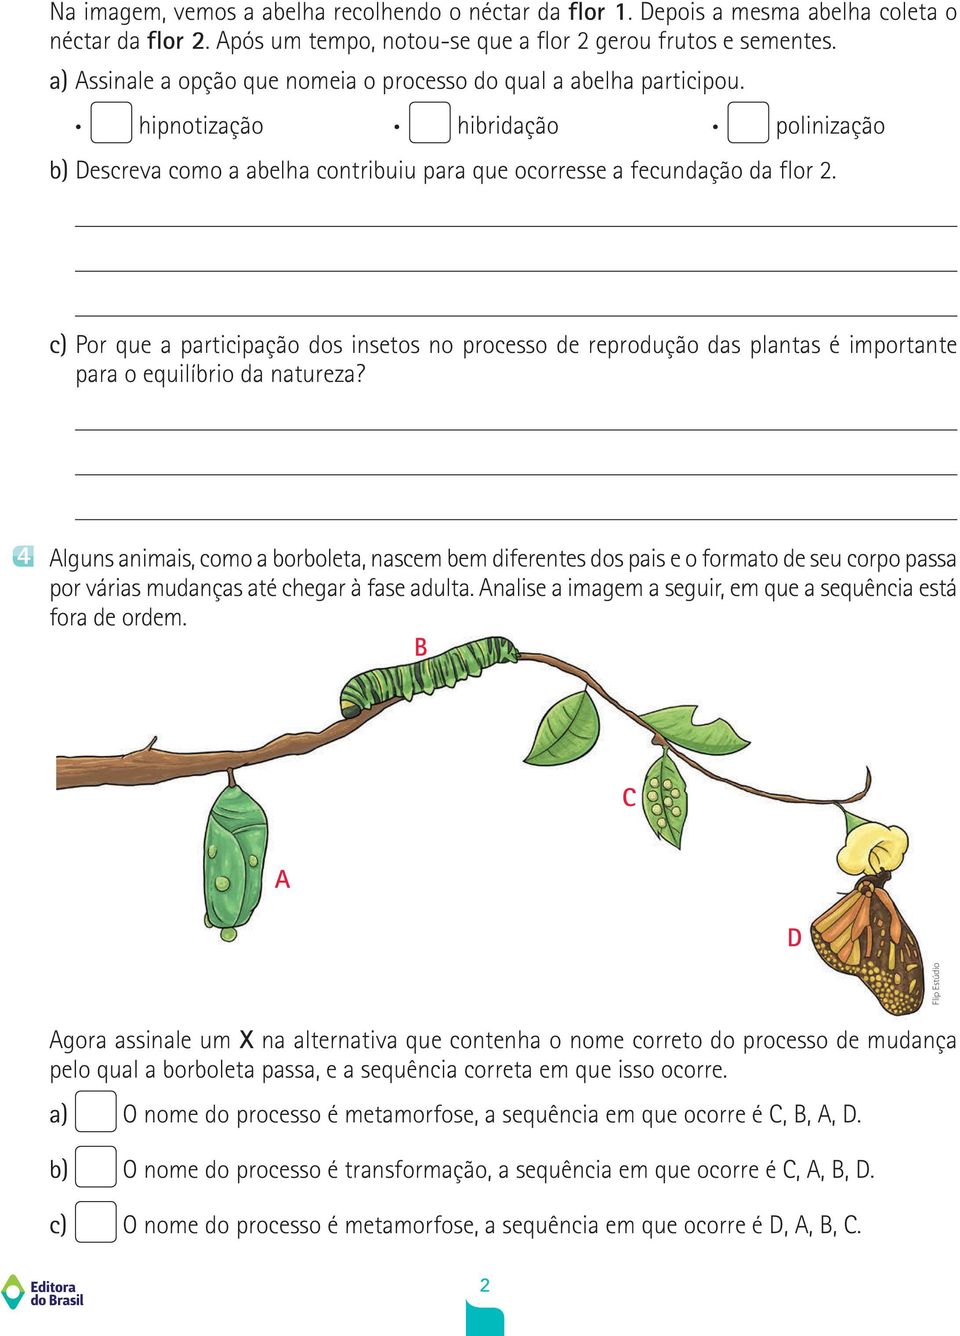 c) Por que a participação dos insetos no processo de reprodução das plantas é importante para o equilíbrio da natureza?